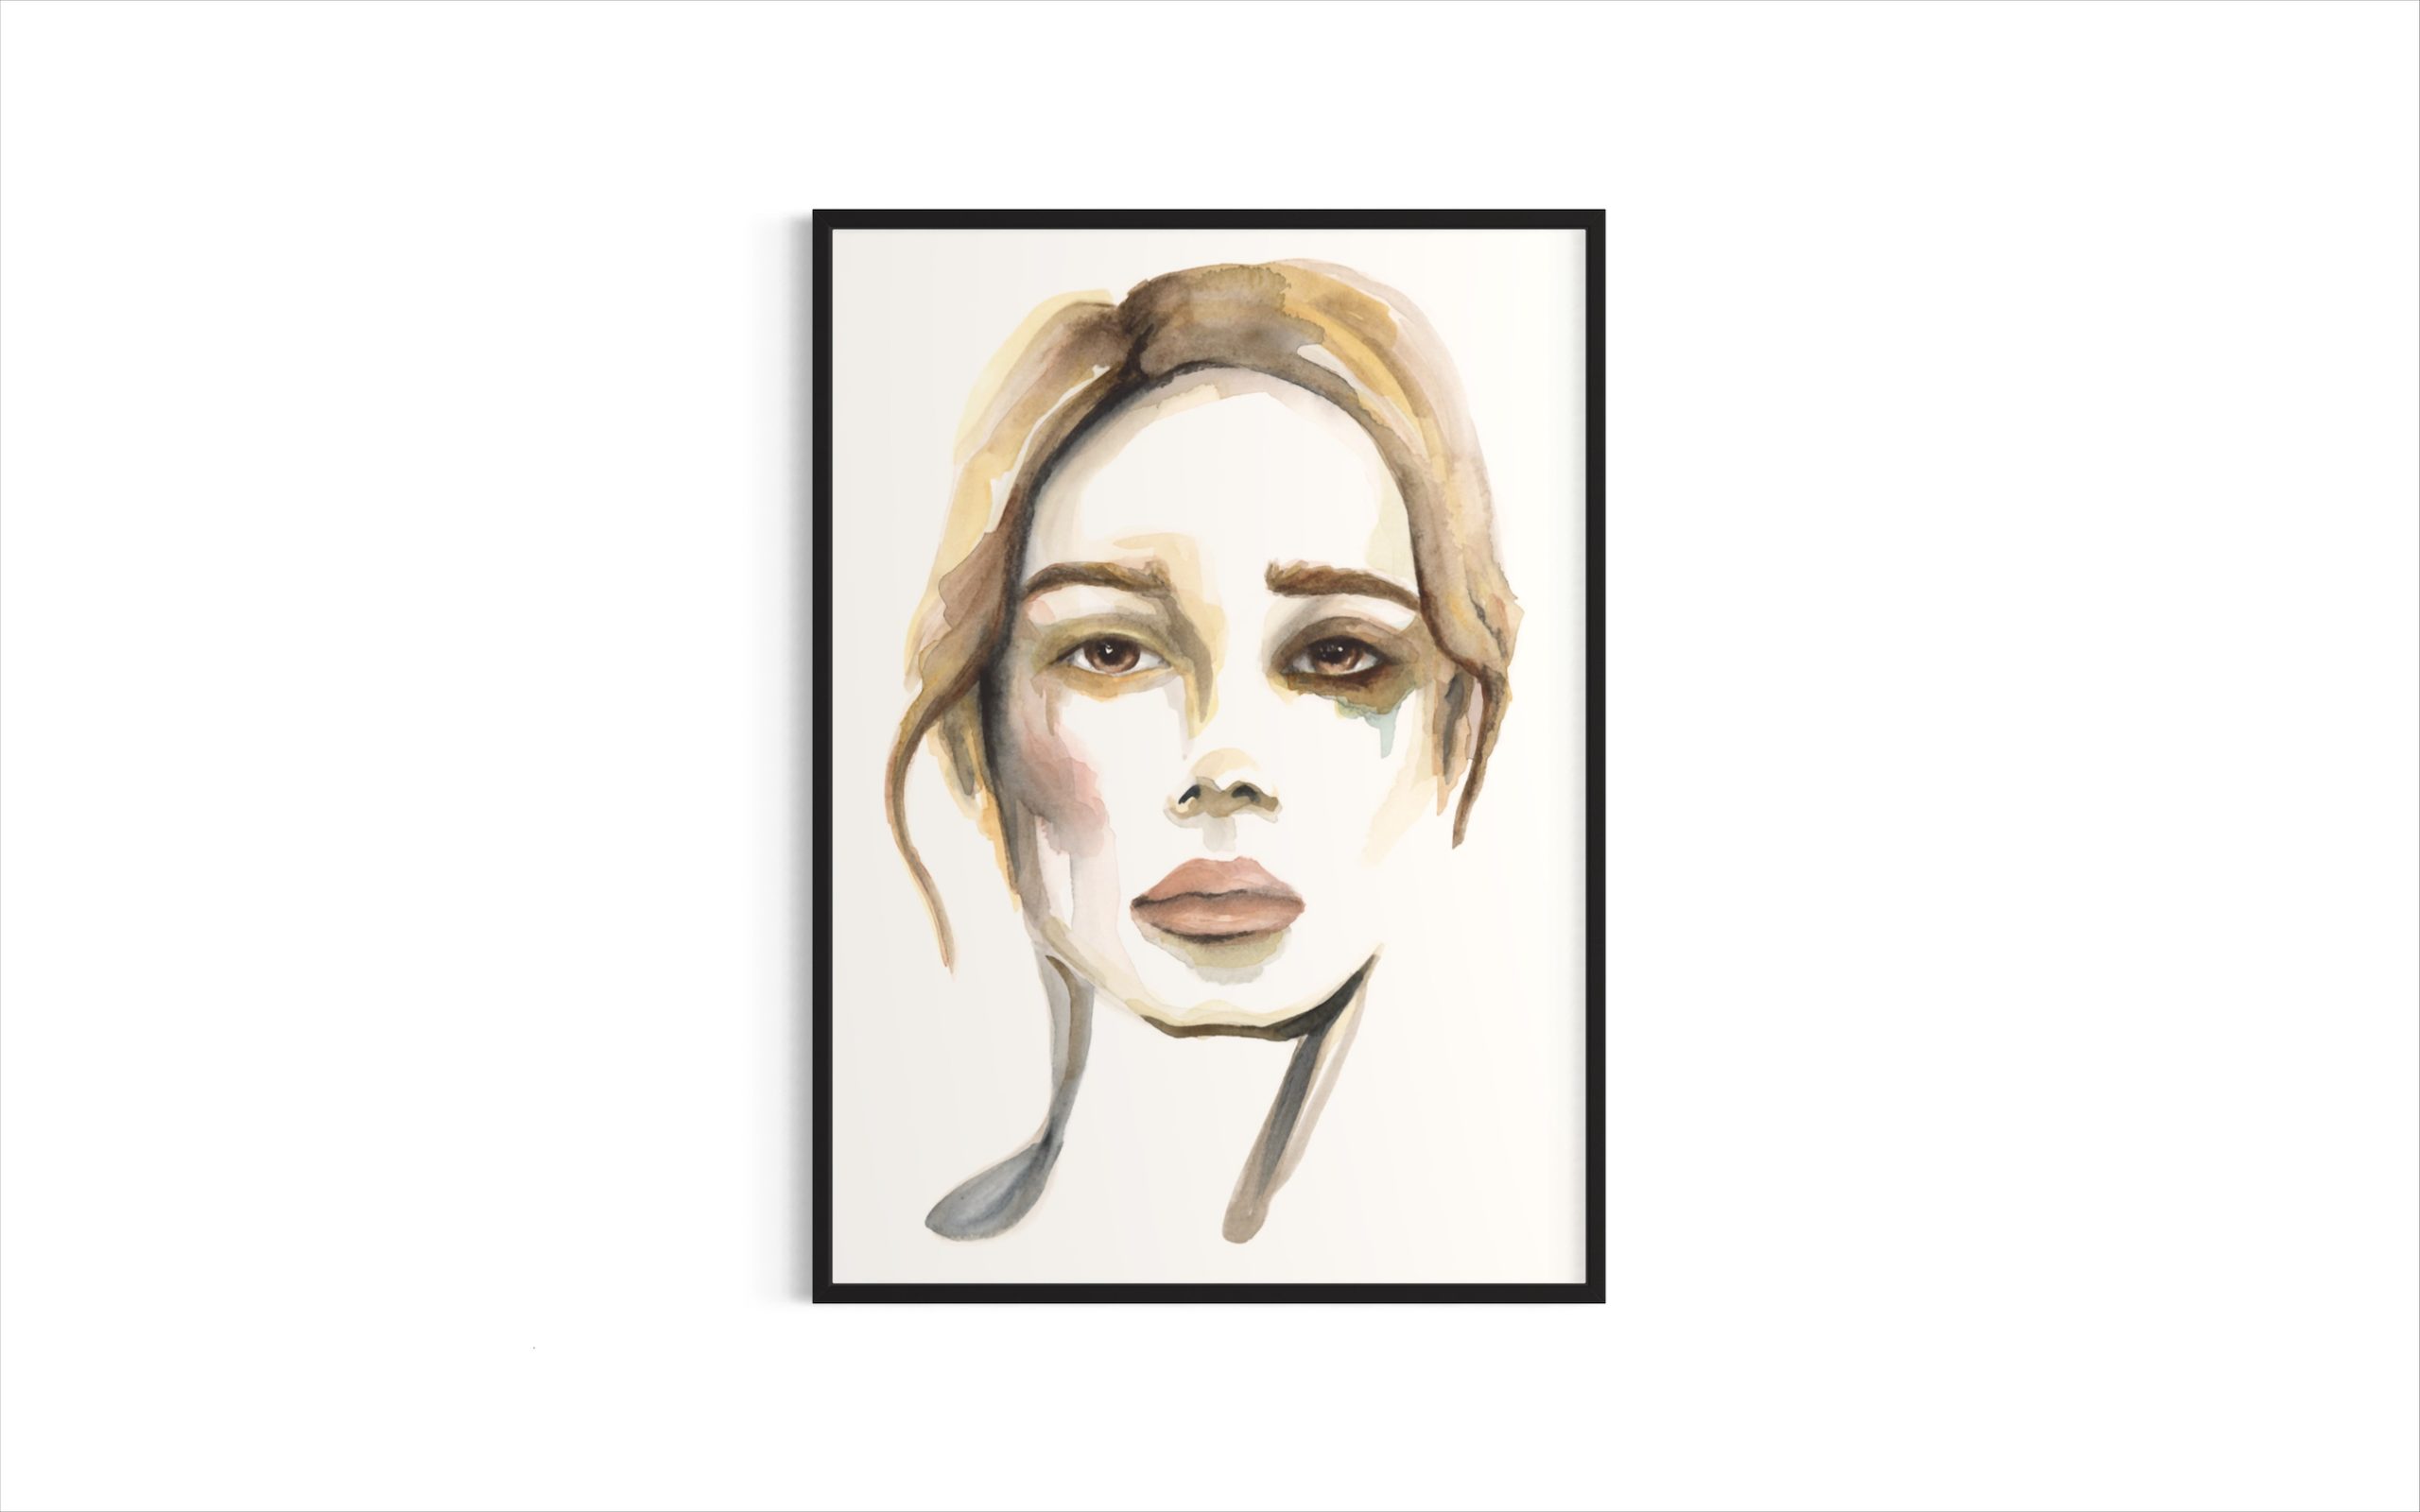 plakat-med-akvarel-portraet-lyshaaret-kvinde